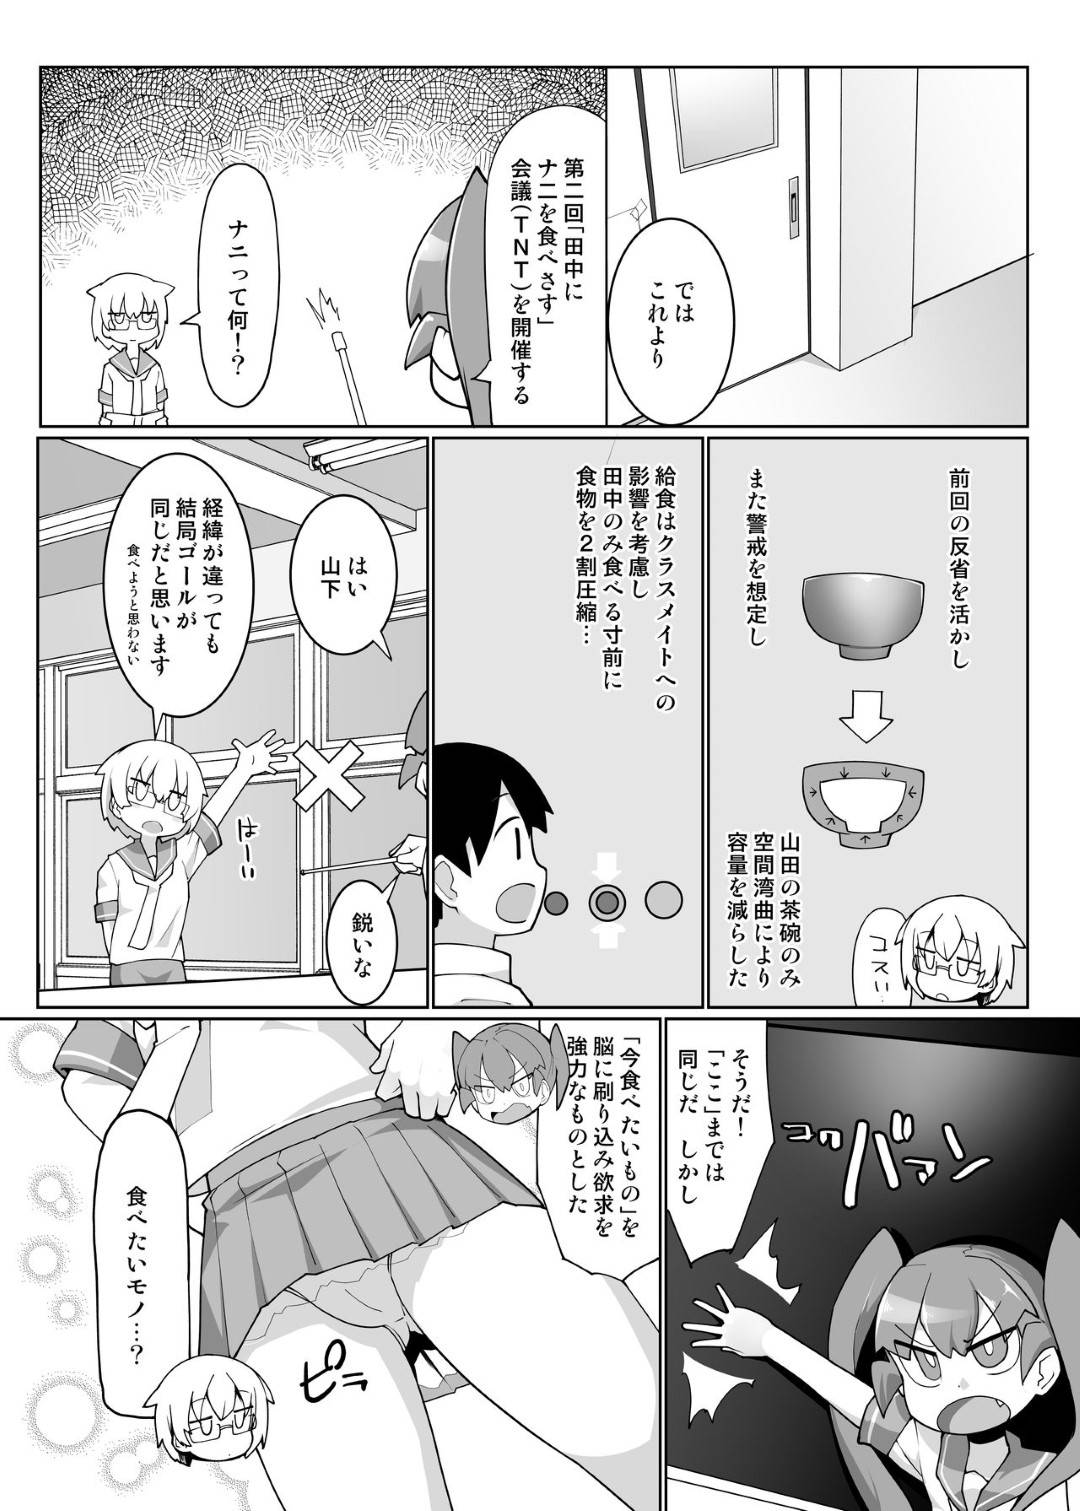 【エロ漫画】田中はカレーライスを食べるために、上野と山下に浣腸をし肛門から出てきたカレーライスを食べる【こたつ。】